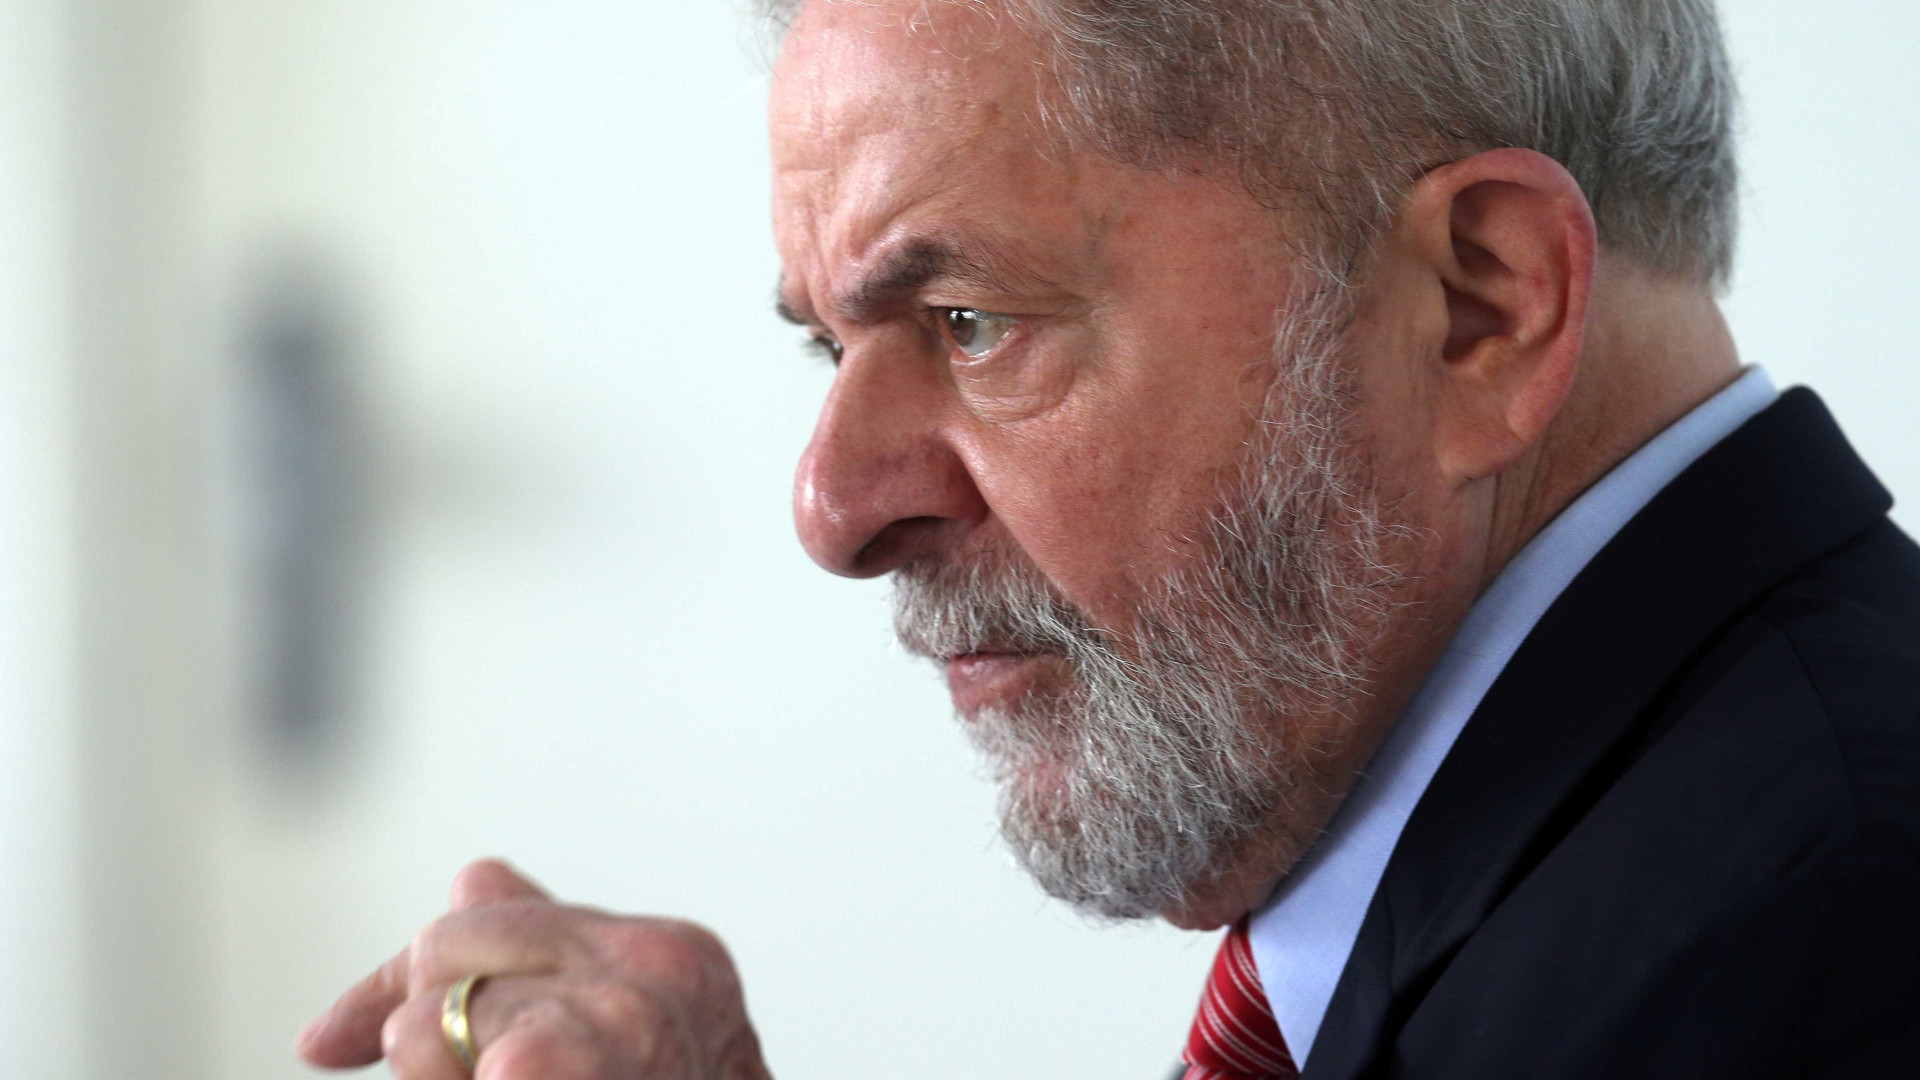 PT registra nesta quarta-feira a candidatura de Lula no TSE